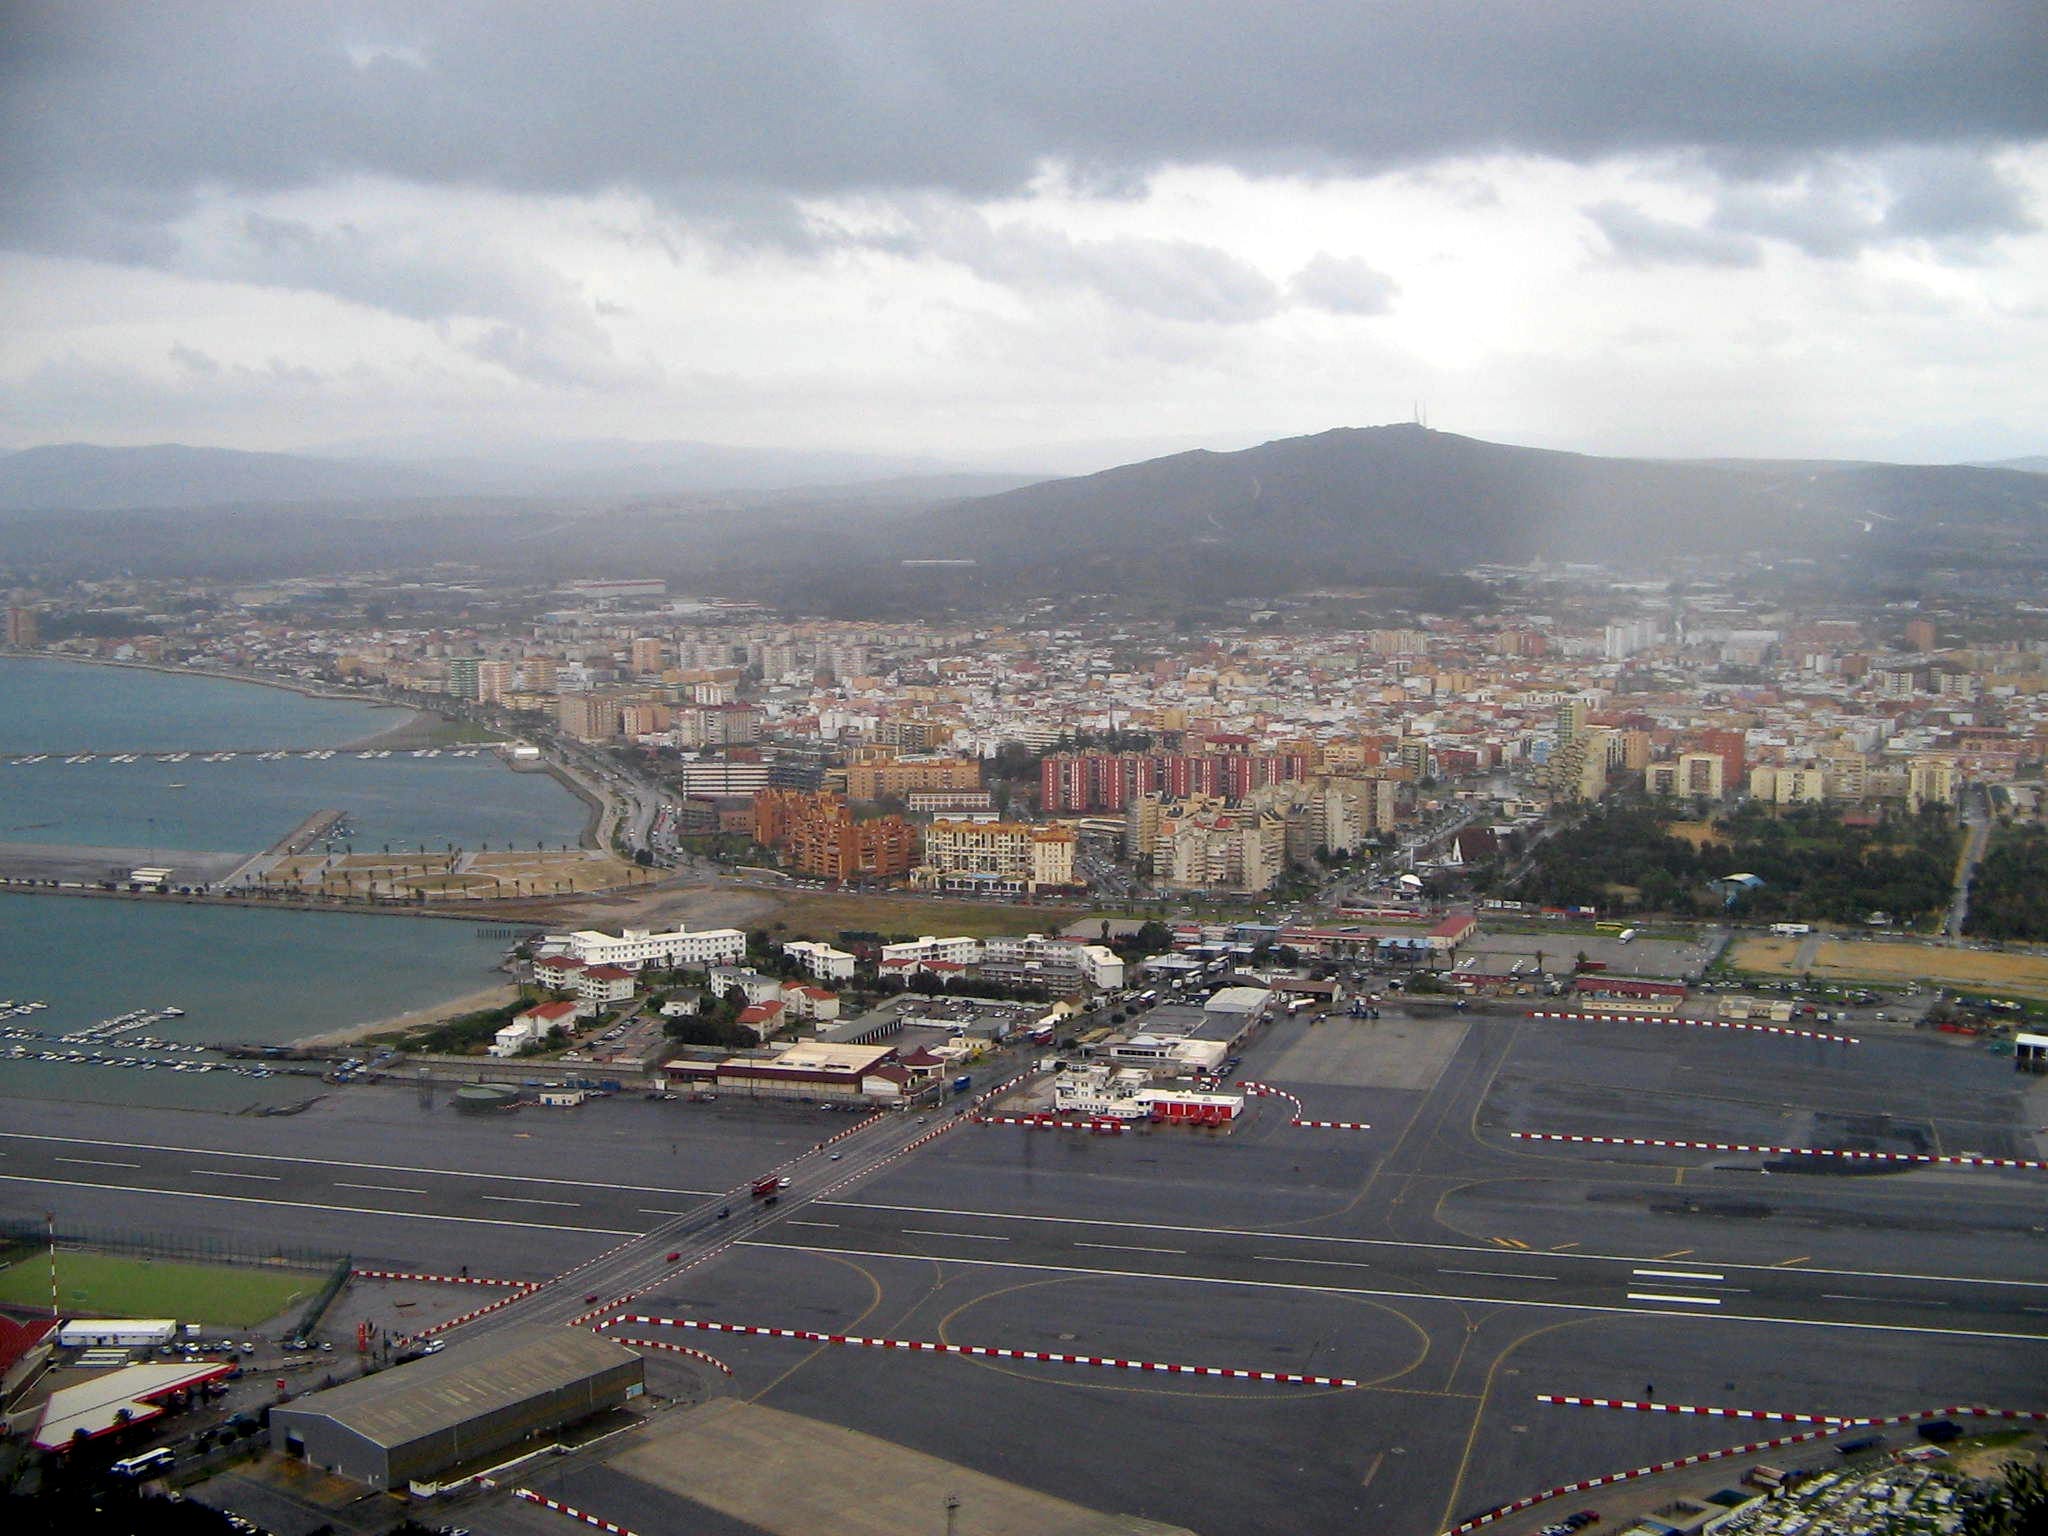 View of La Línea de la Concepción, from the Rock of Gibraltar